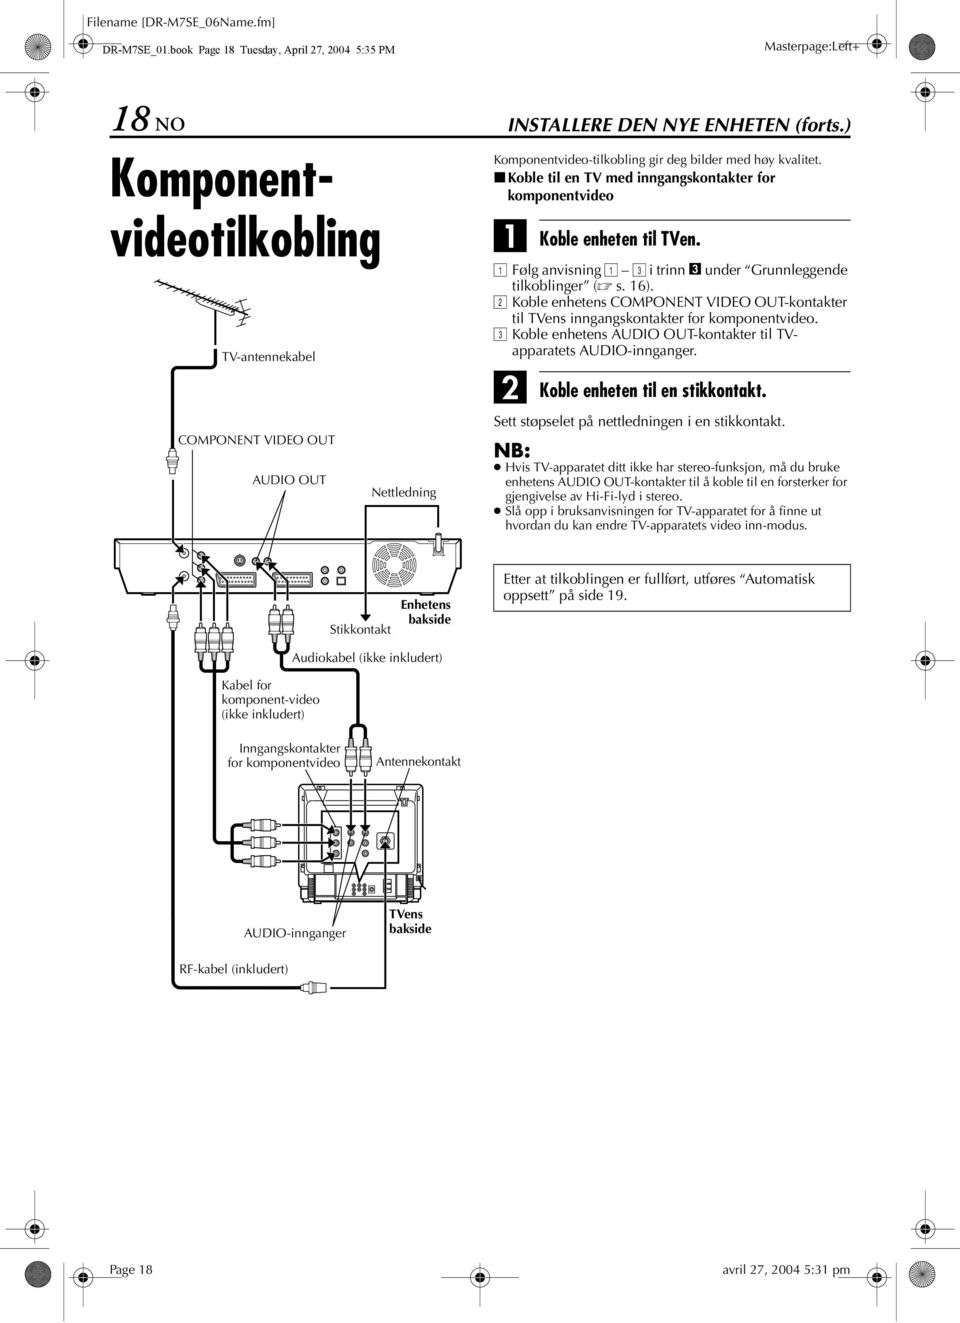 ) Komponentvideo-tilkobling gir deg bilder med høy kvalitet. 8Koble til en med inngangskontakter for komponentvideo Koble enheten til en.